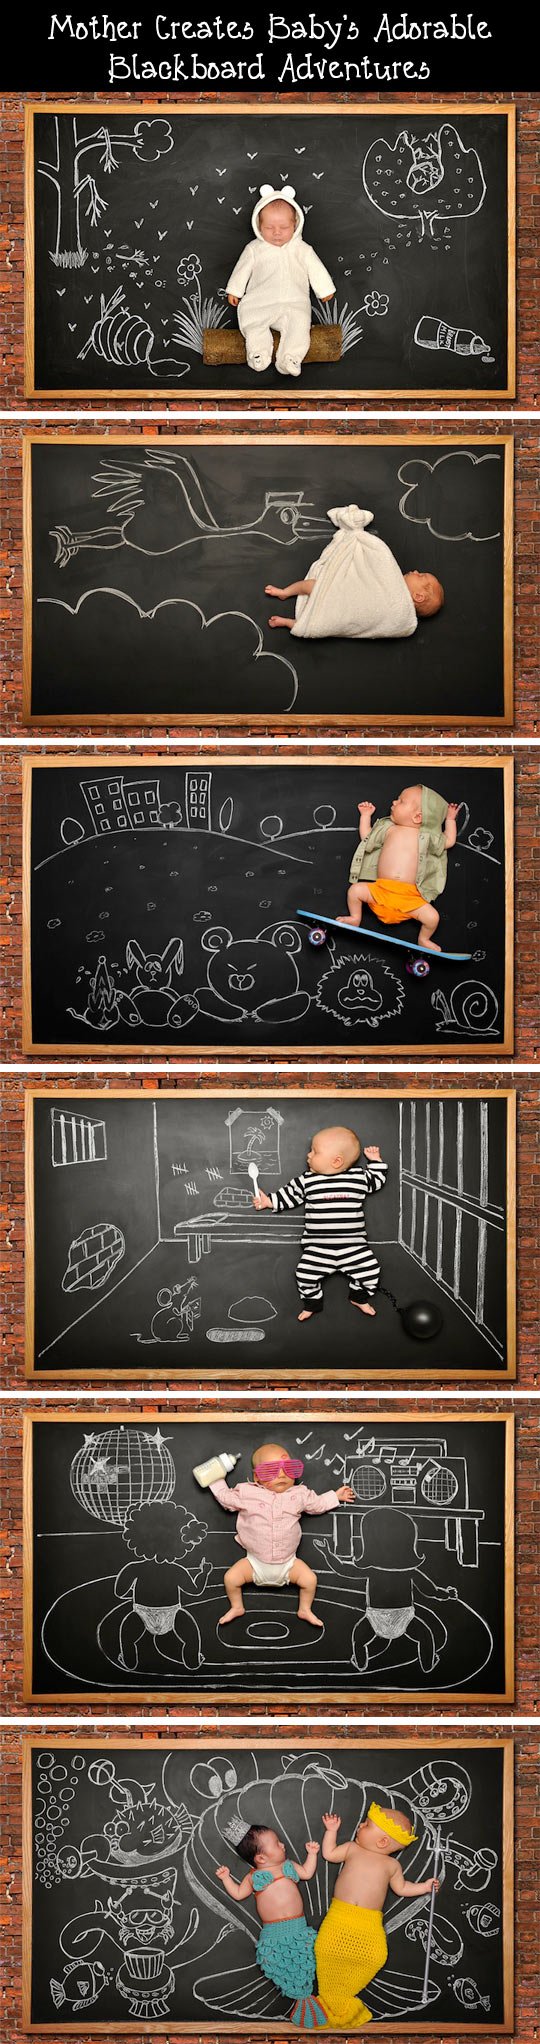 Baby's Blackboard Adventures.